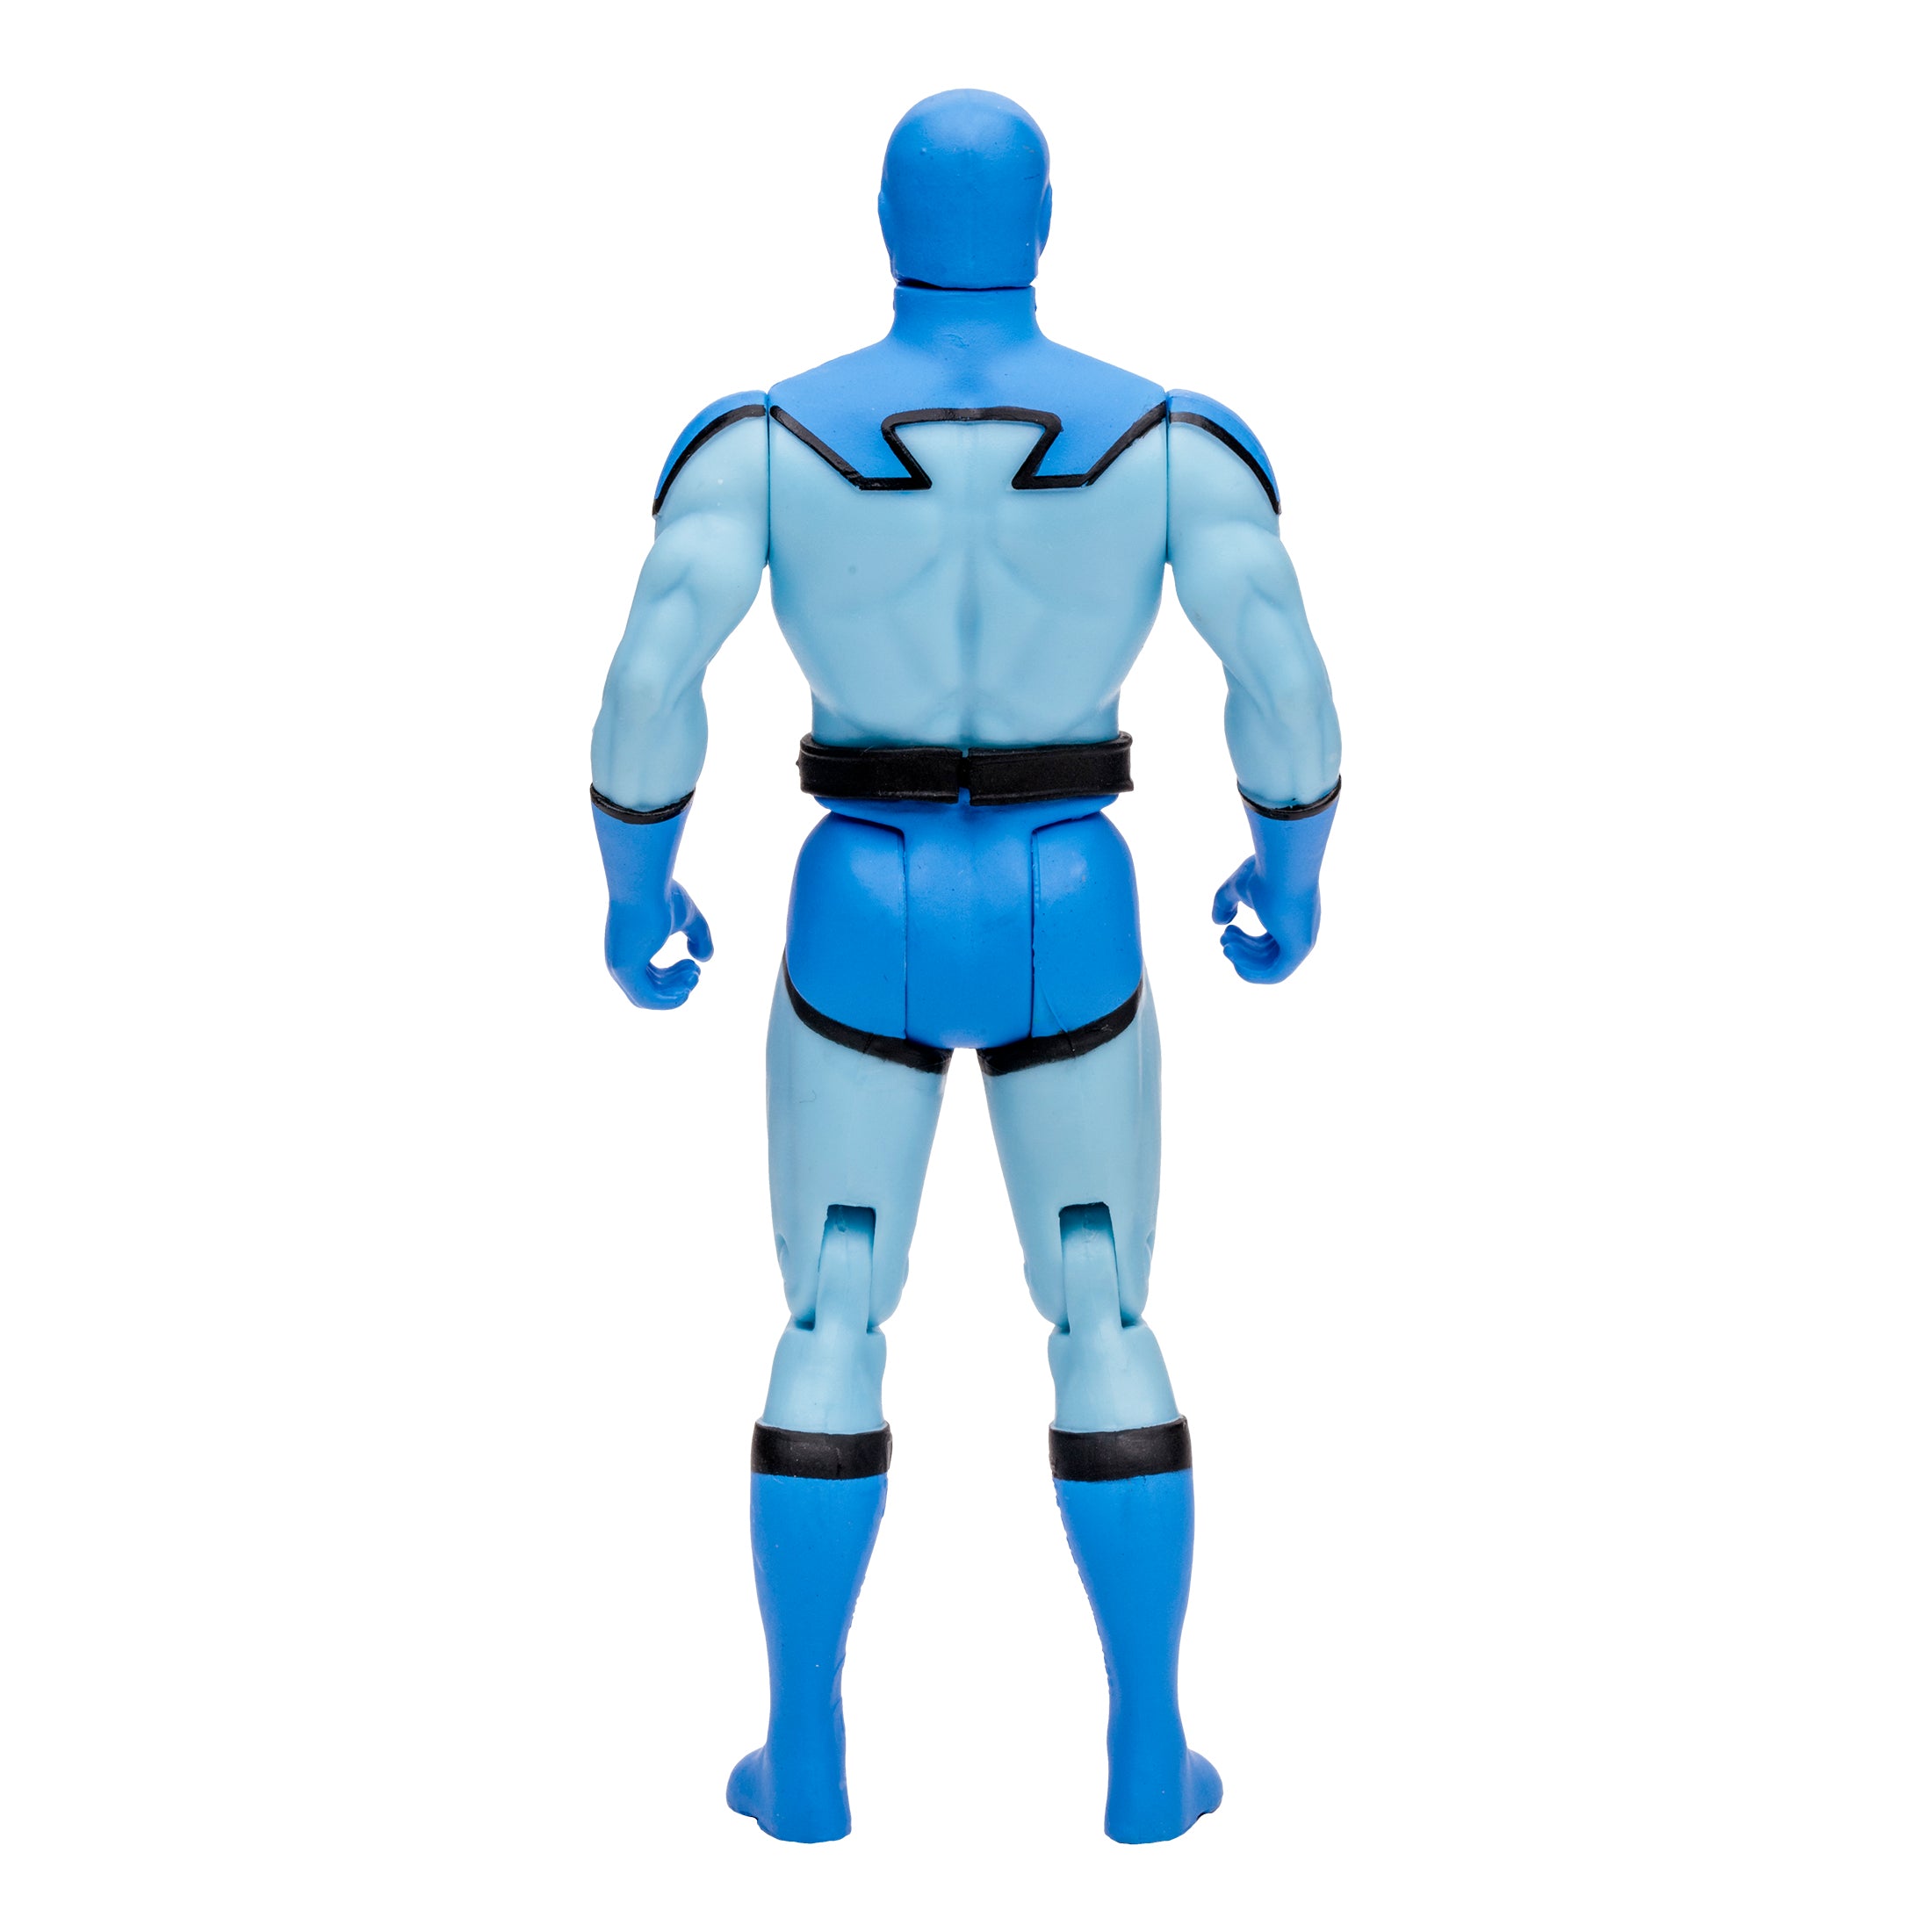 DC Direct Super Powers Figura de Accion: DC Comics Justicie League International - Blue Beetle 4.5 Pulgadas